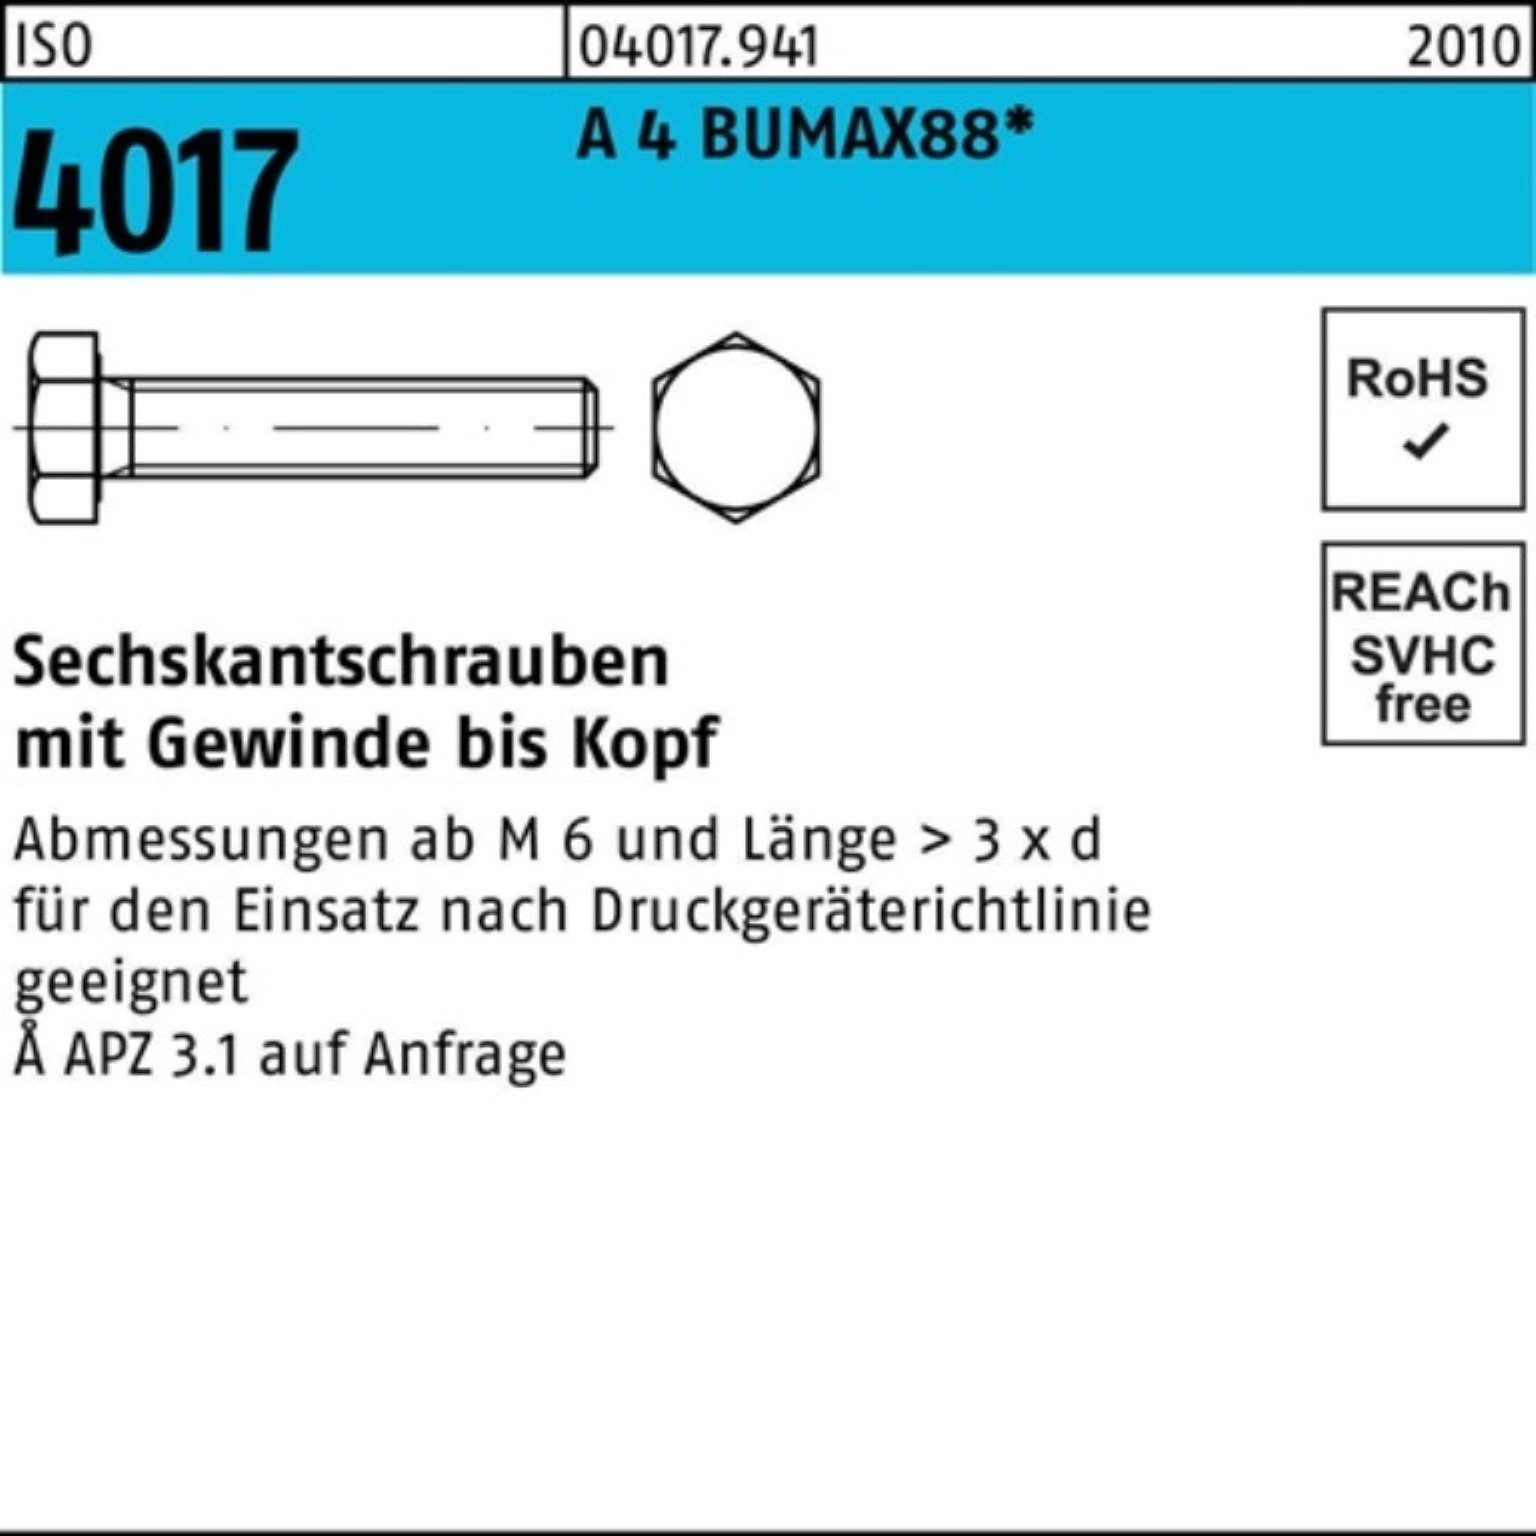 Bufab Sechskantschraube 70 10 A M20x BUMAX88 VG 4 ISO Stück 100er Pack 4017 Sechskantschraube